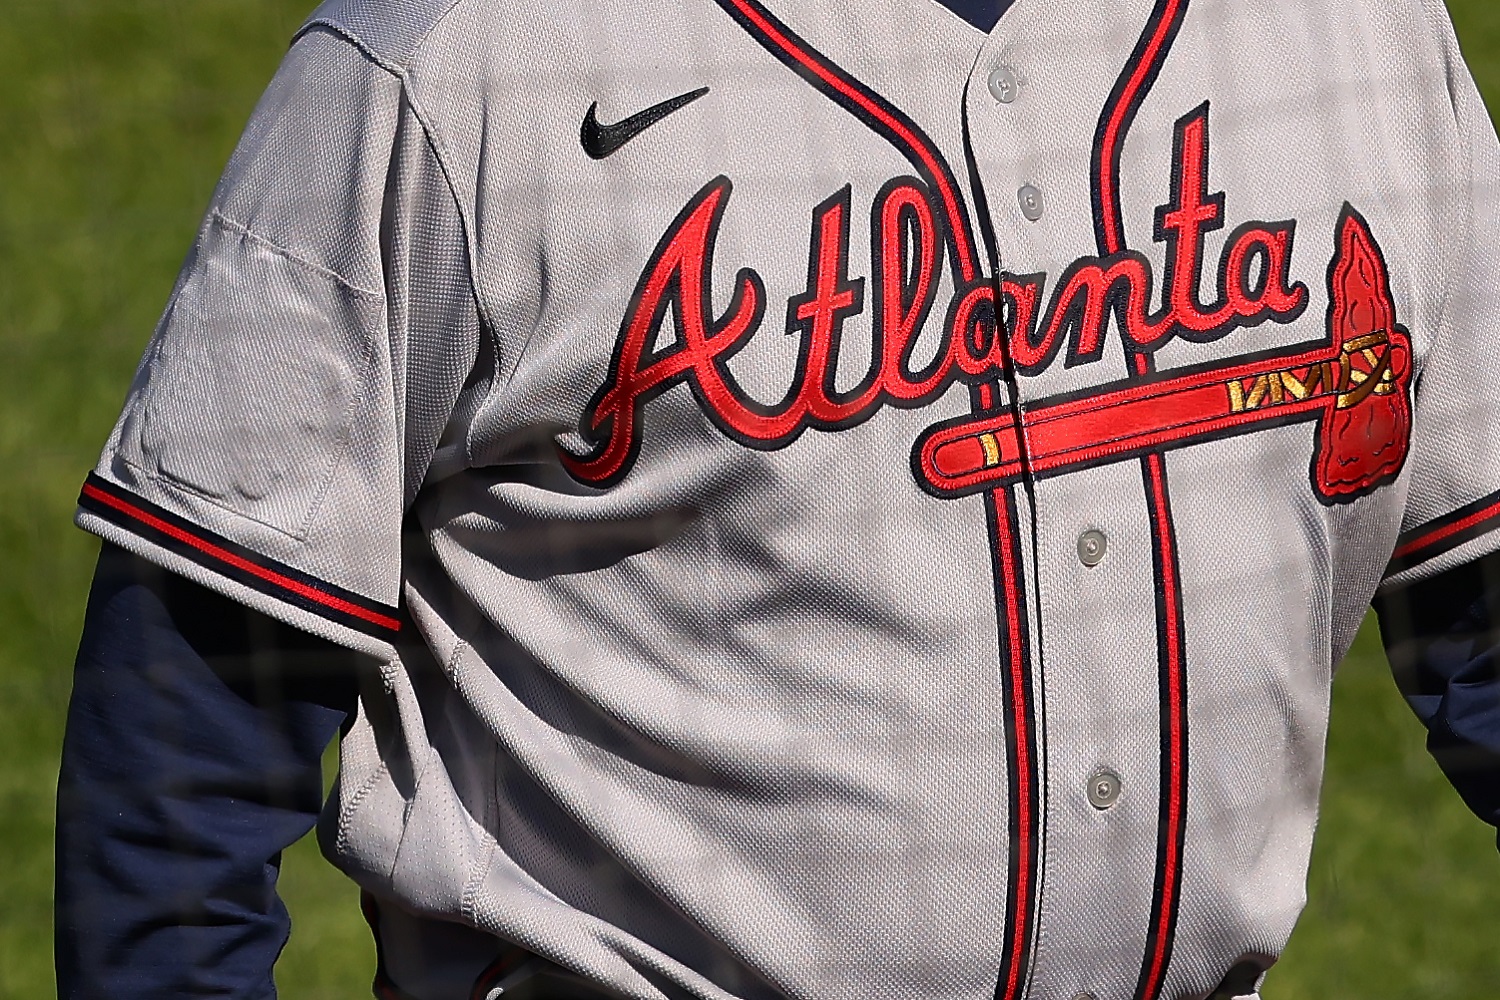 Atlanta Braves cover all-star logo on jerseys, shift hats